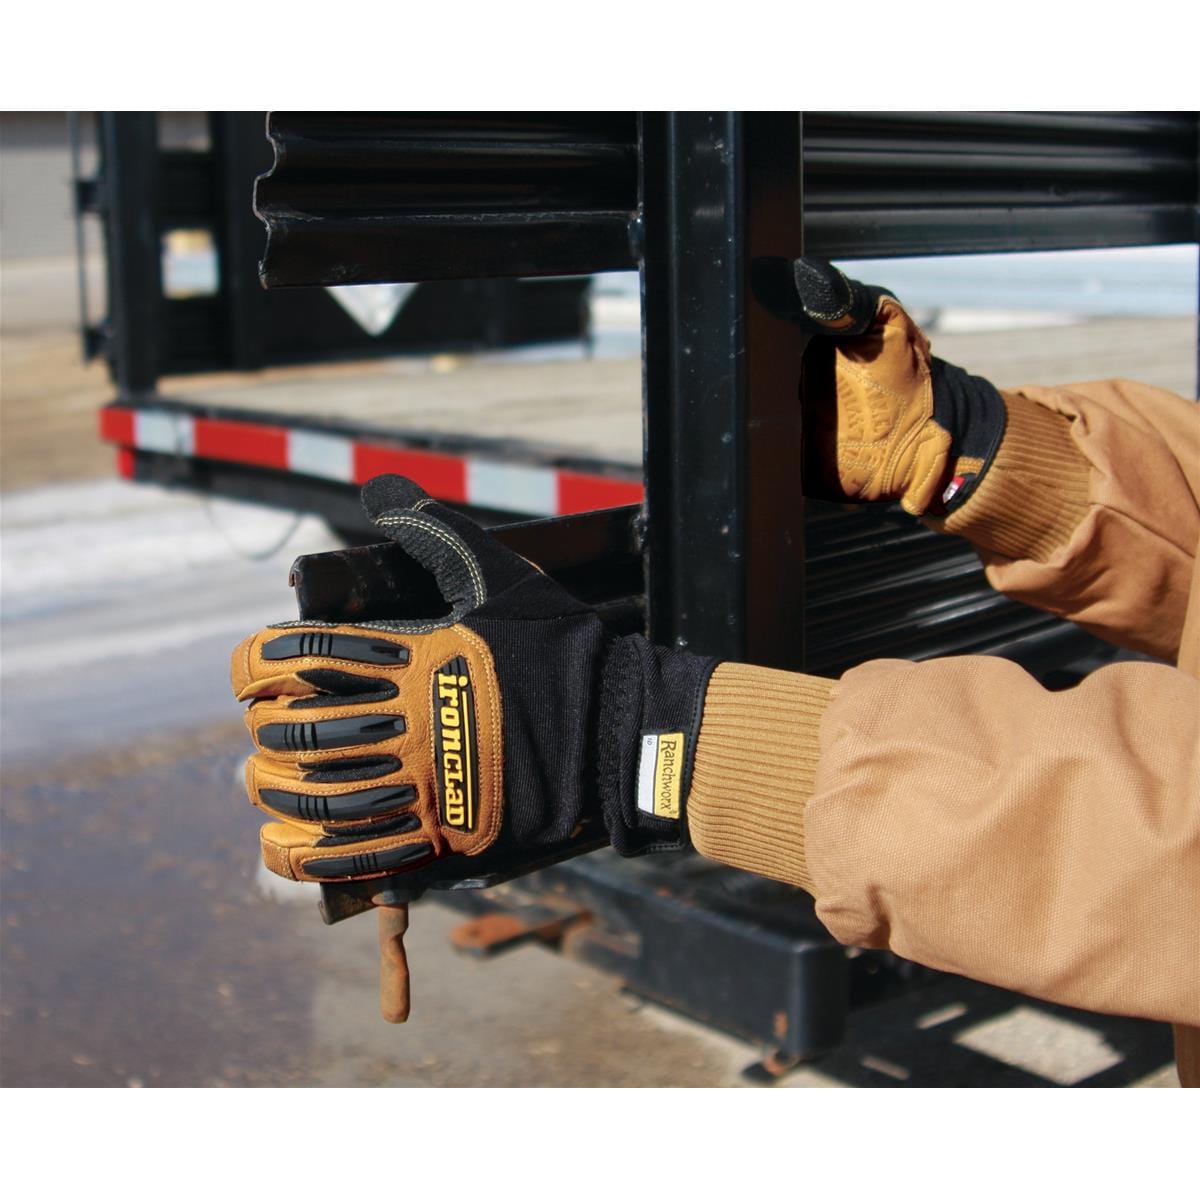 Ranchworx® Work Gloves